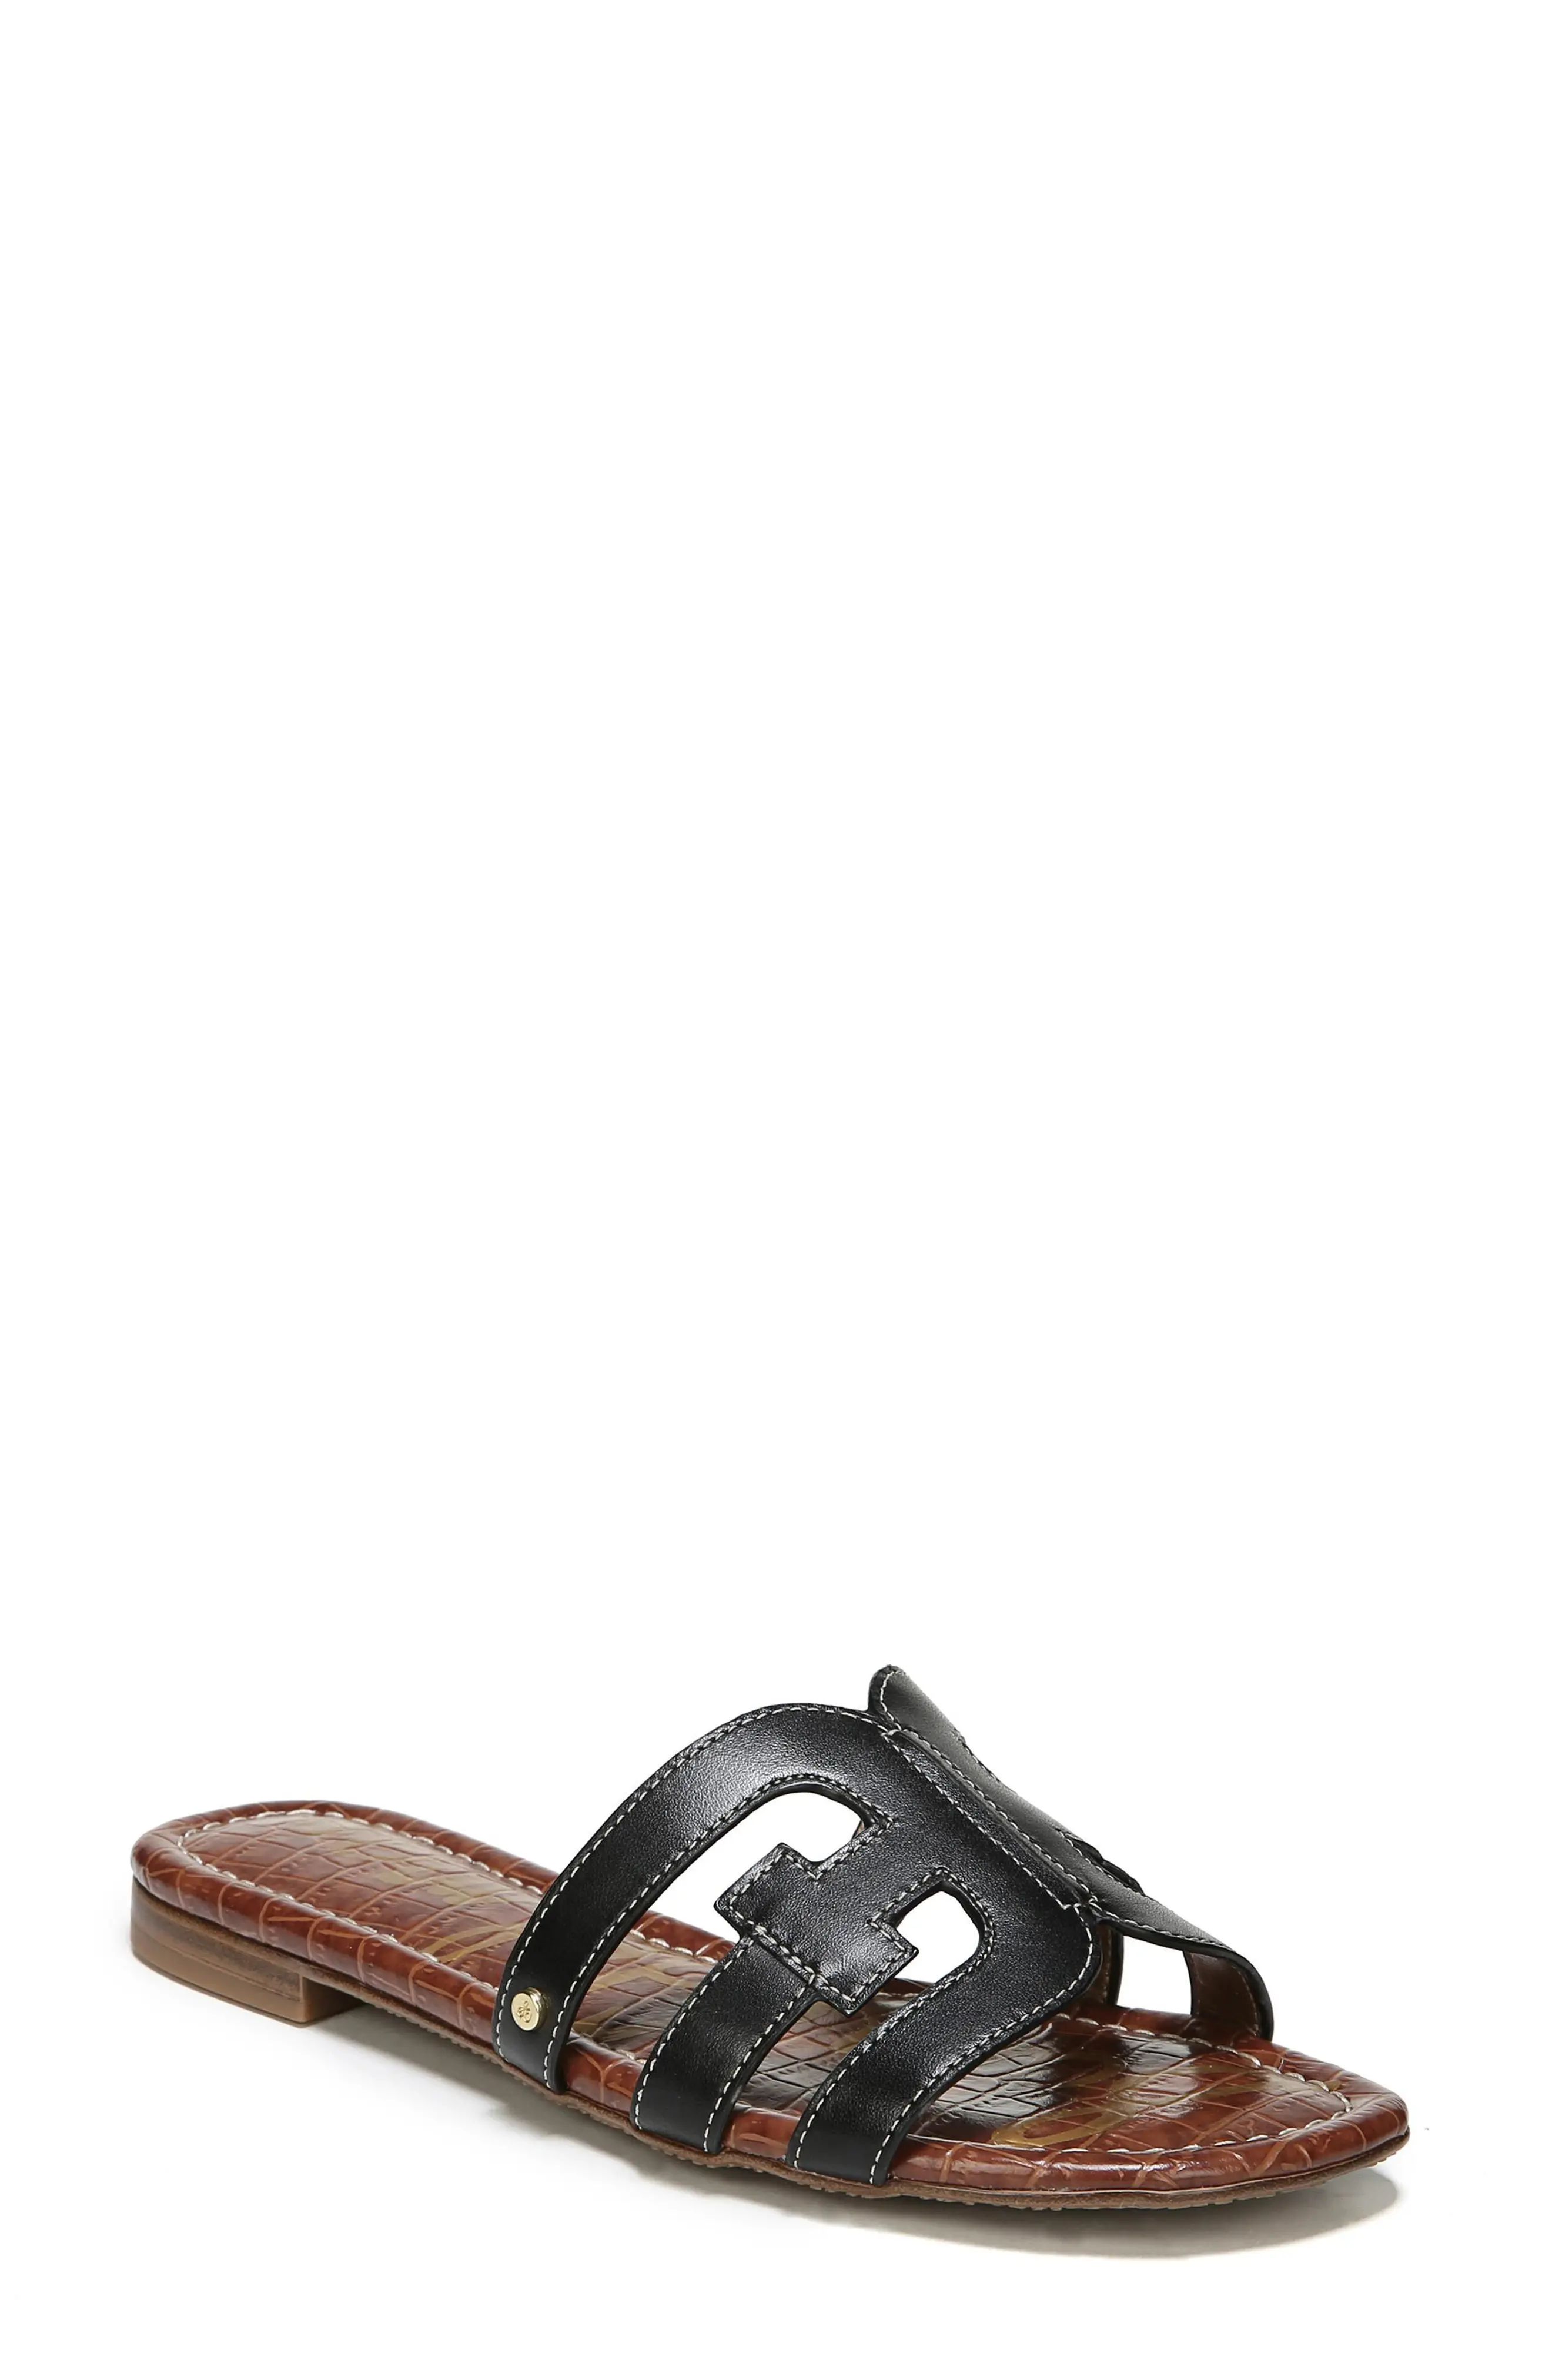 Sam Edelman Bay Cutout Slide Sandal in Black Leather at Nordstrom, Size 10 | Nordstrom